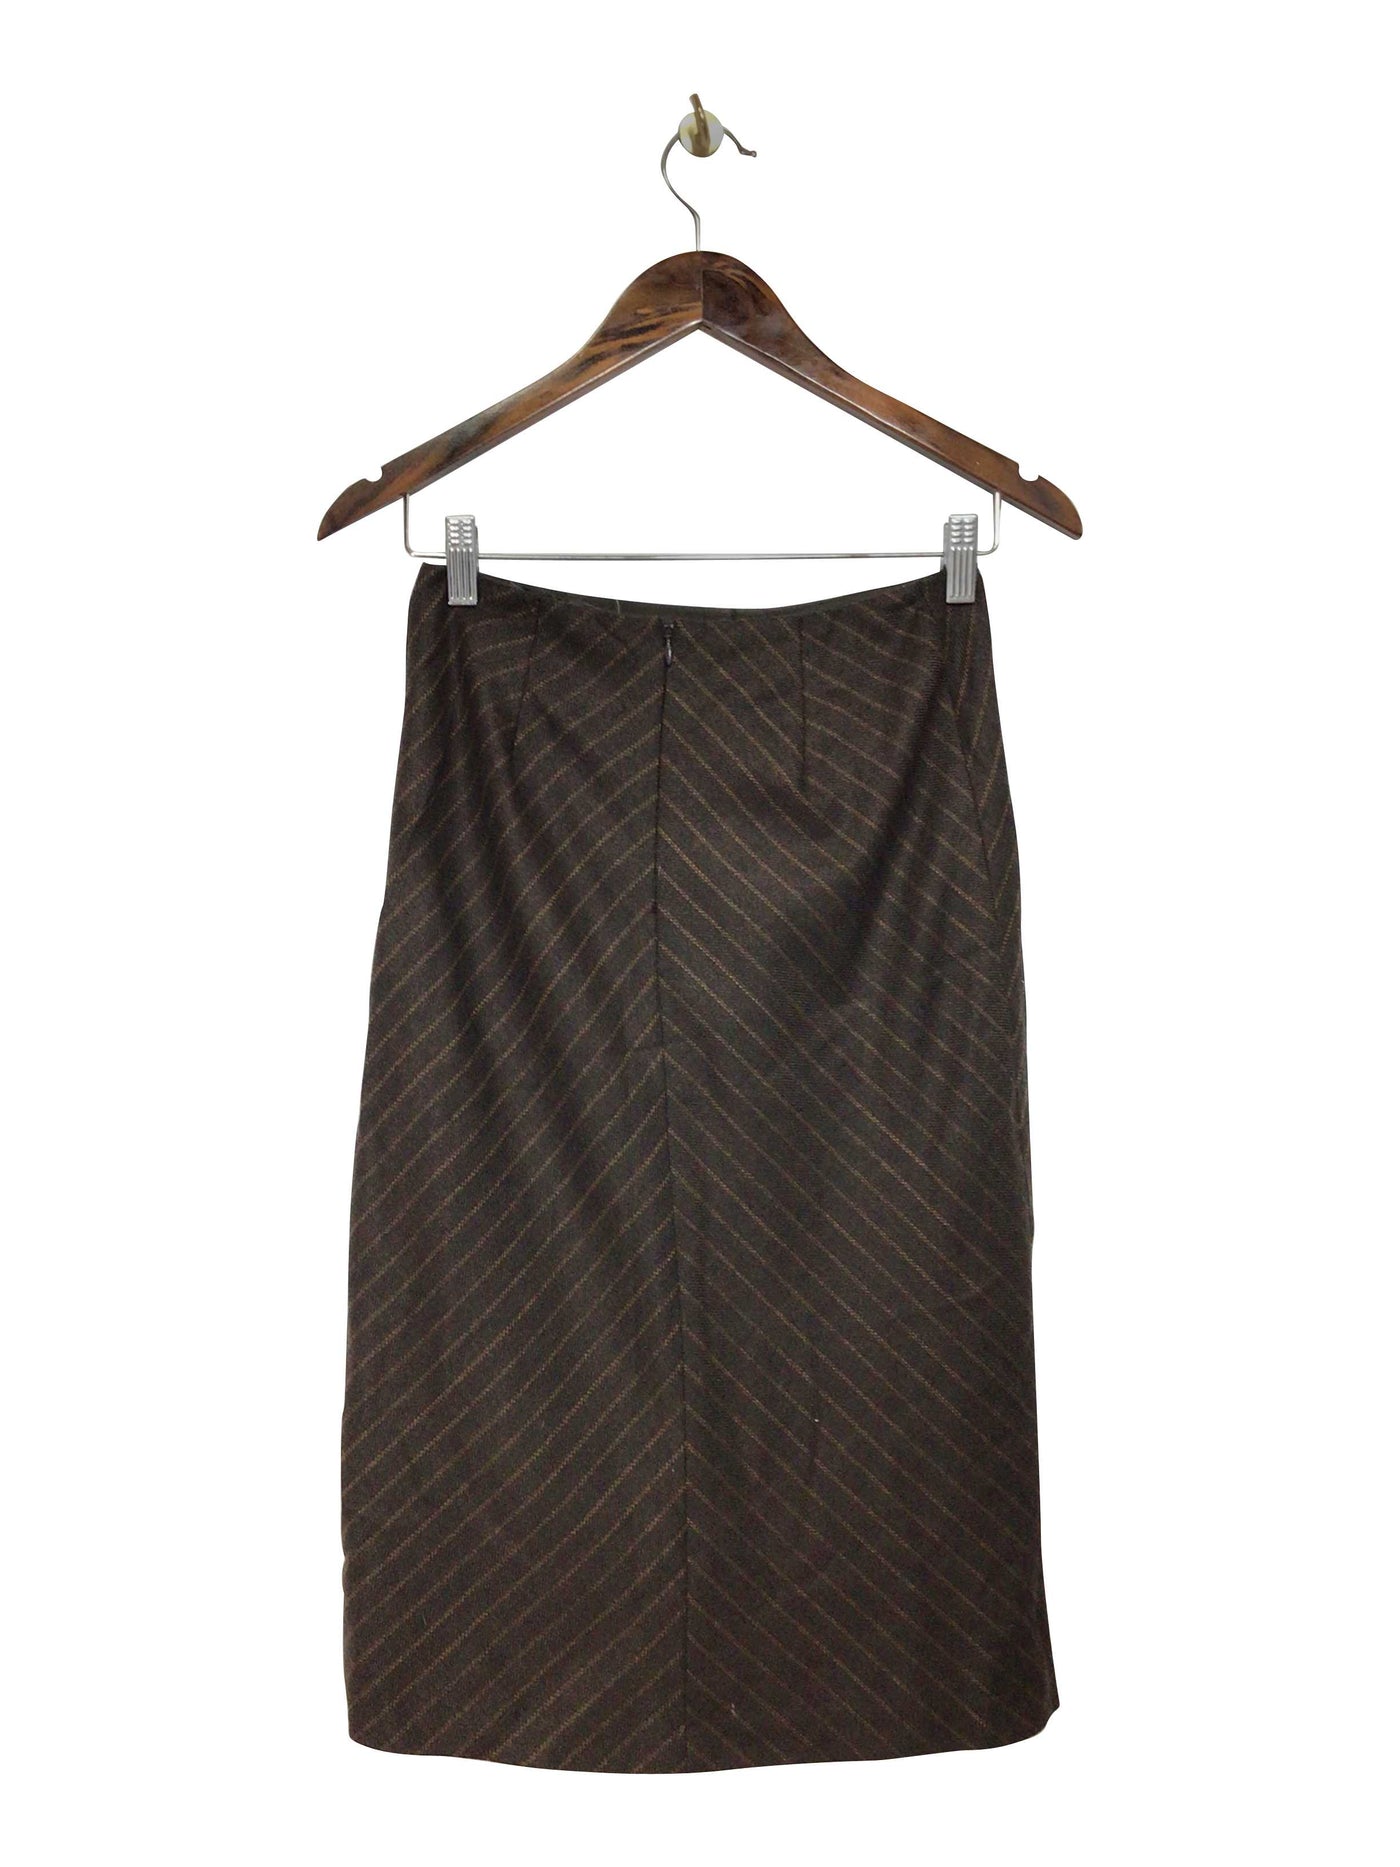 JACOB Regular fit Skirt in Brown  -  2  12.99 Koop